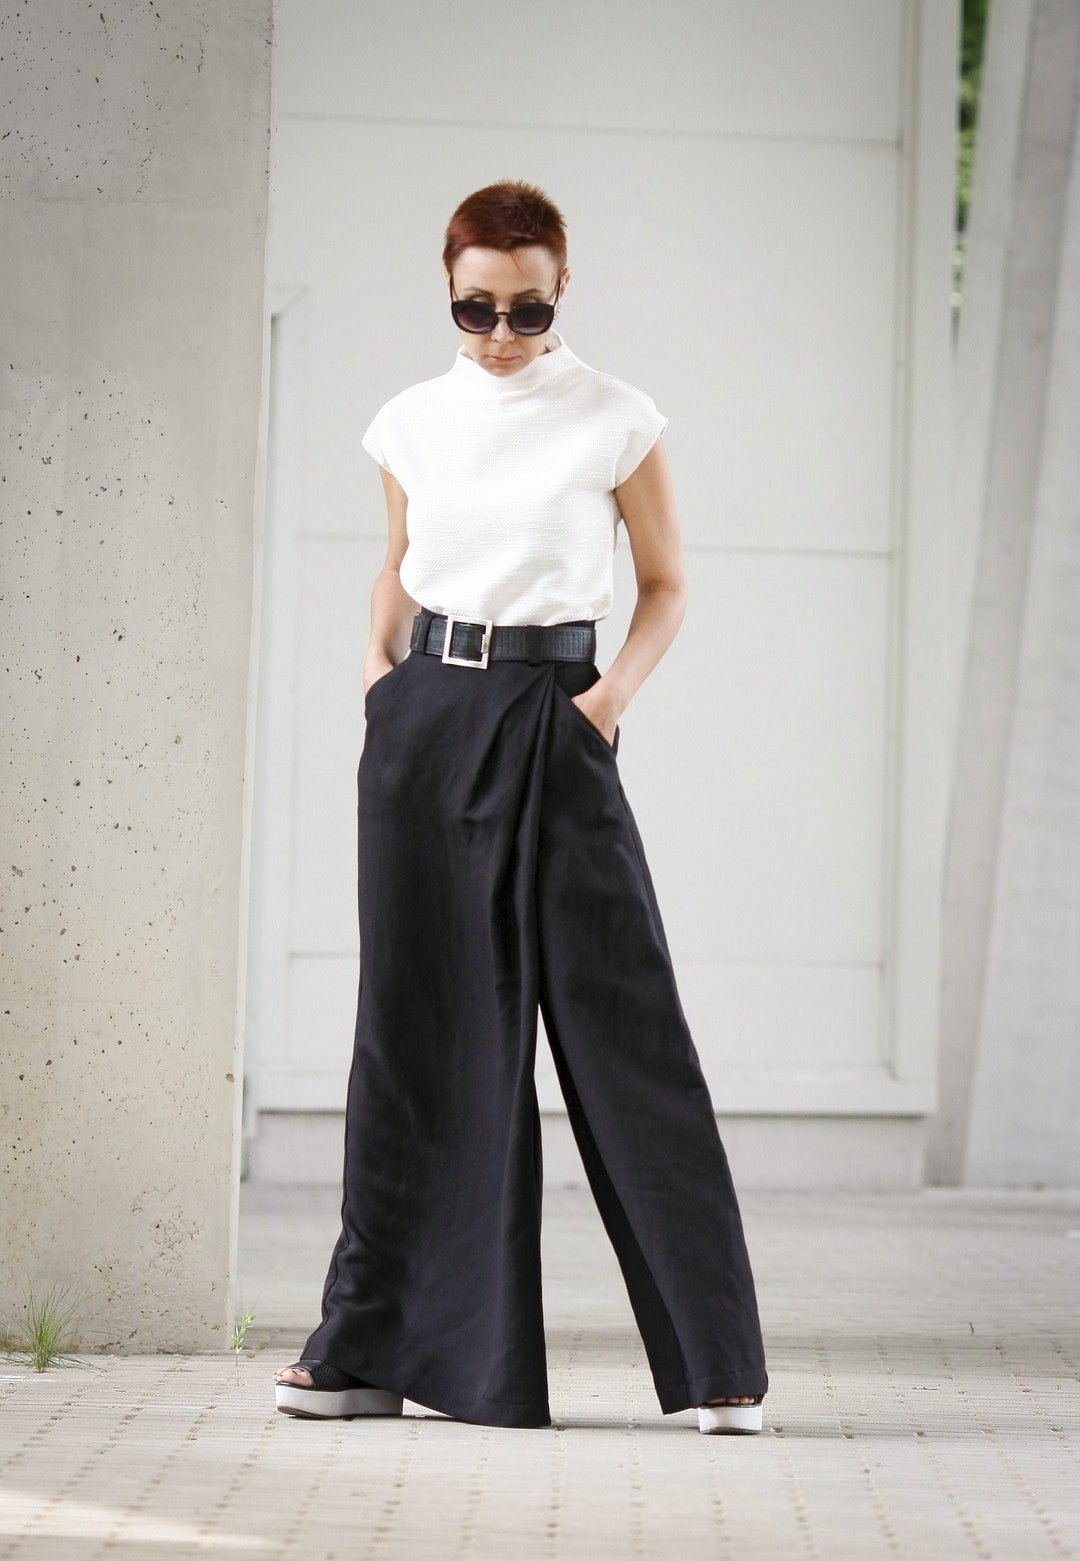 Straight-Fit Hose aus Baumwolle im Metallic-Look - Damen